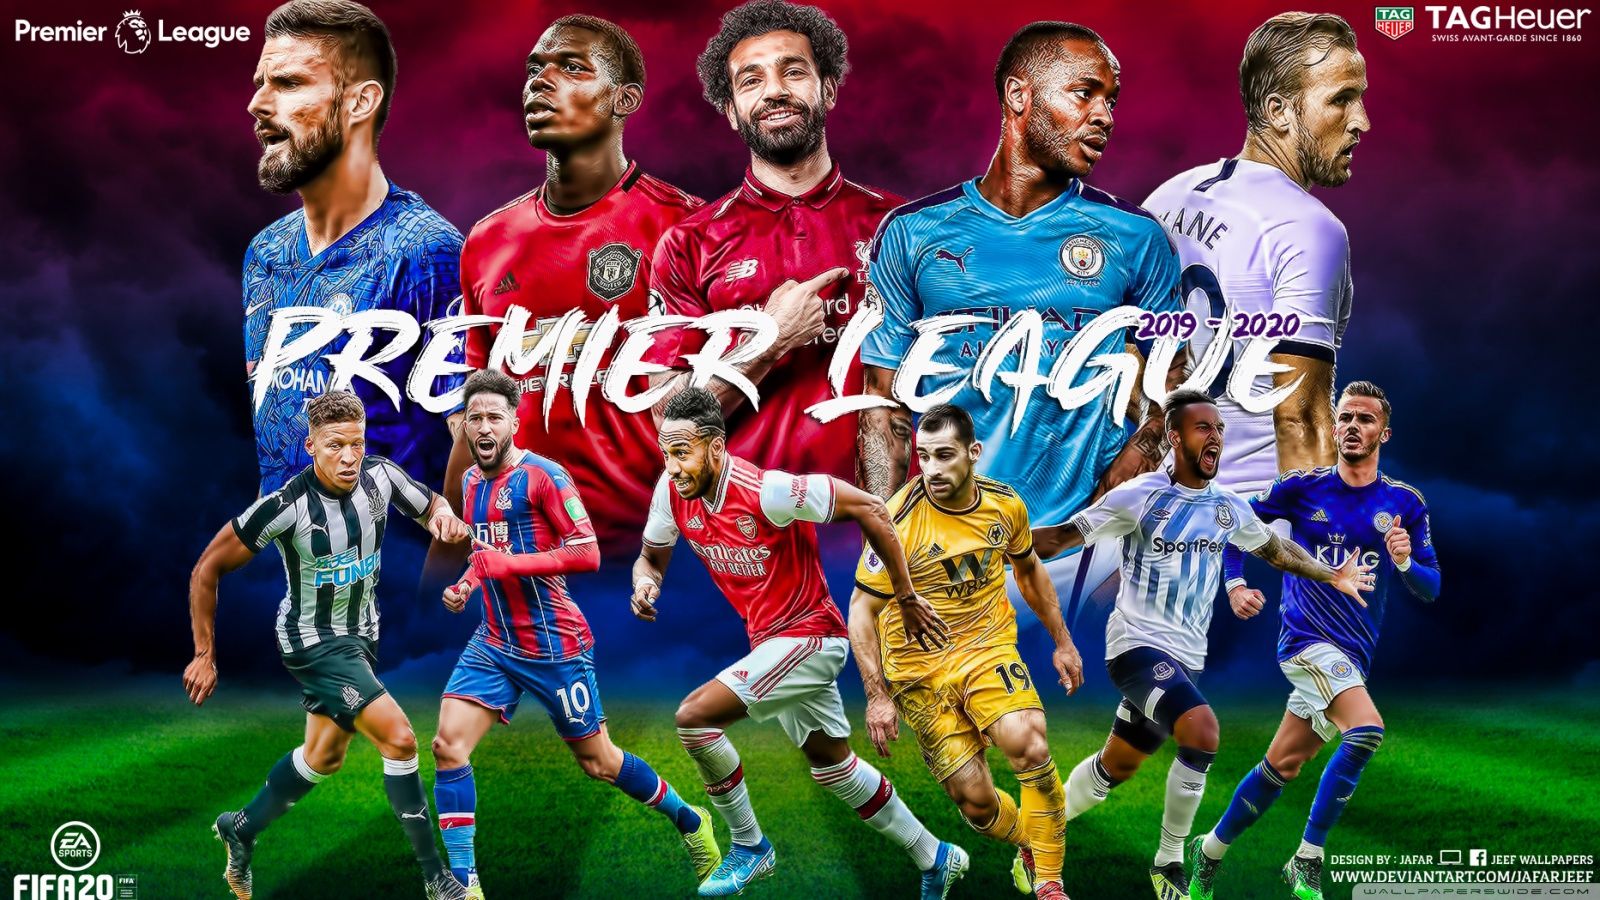 Premier League Wallpapers 4k, HD Premier League Backgrounds on WallpaperBat